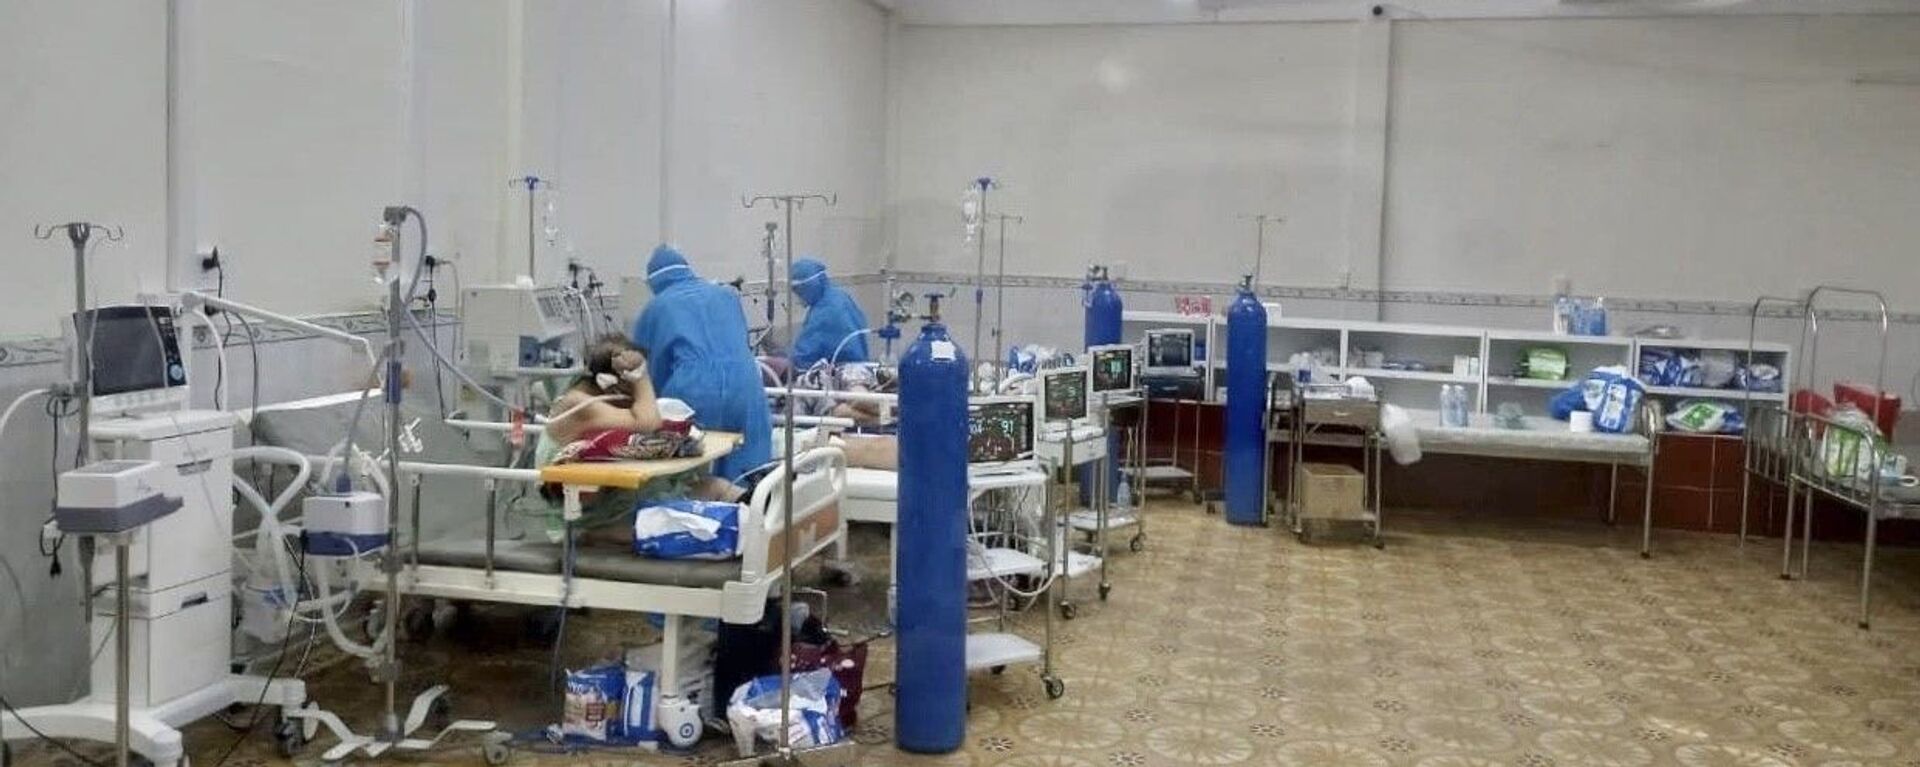 Tại bệnh viện Tân Phú, số lượng bệnh nhân đang điều trị là 220 người. Trong số đó có 151 bệnh nhân nặng cần thở oxy, số còn lại là người có triệu chứng, nhiều bệnh nền cần phải điều trị - Sputnik Việt Nam, 1920, 22.11.2021